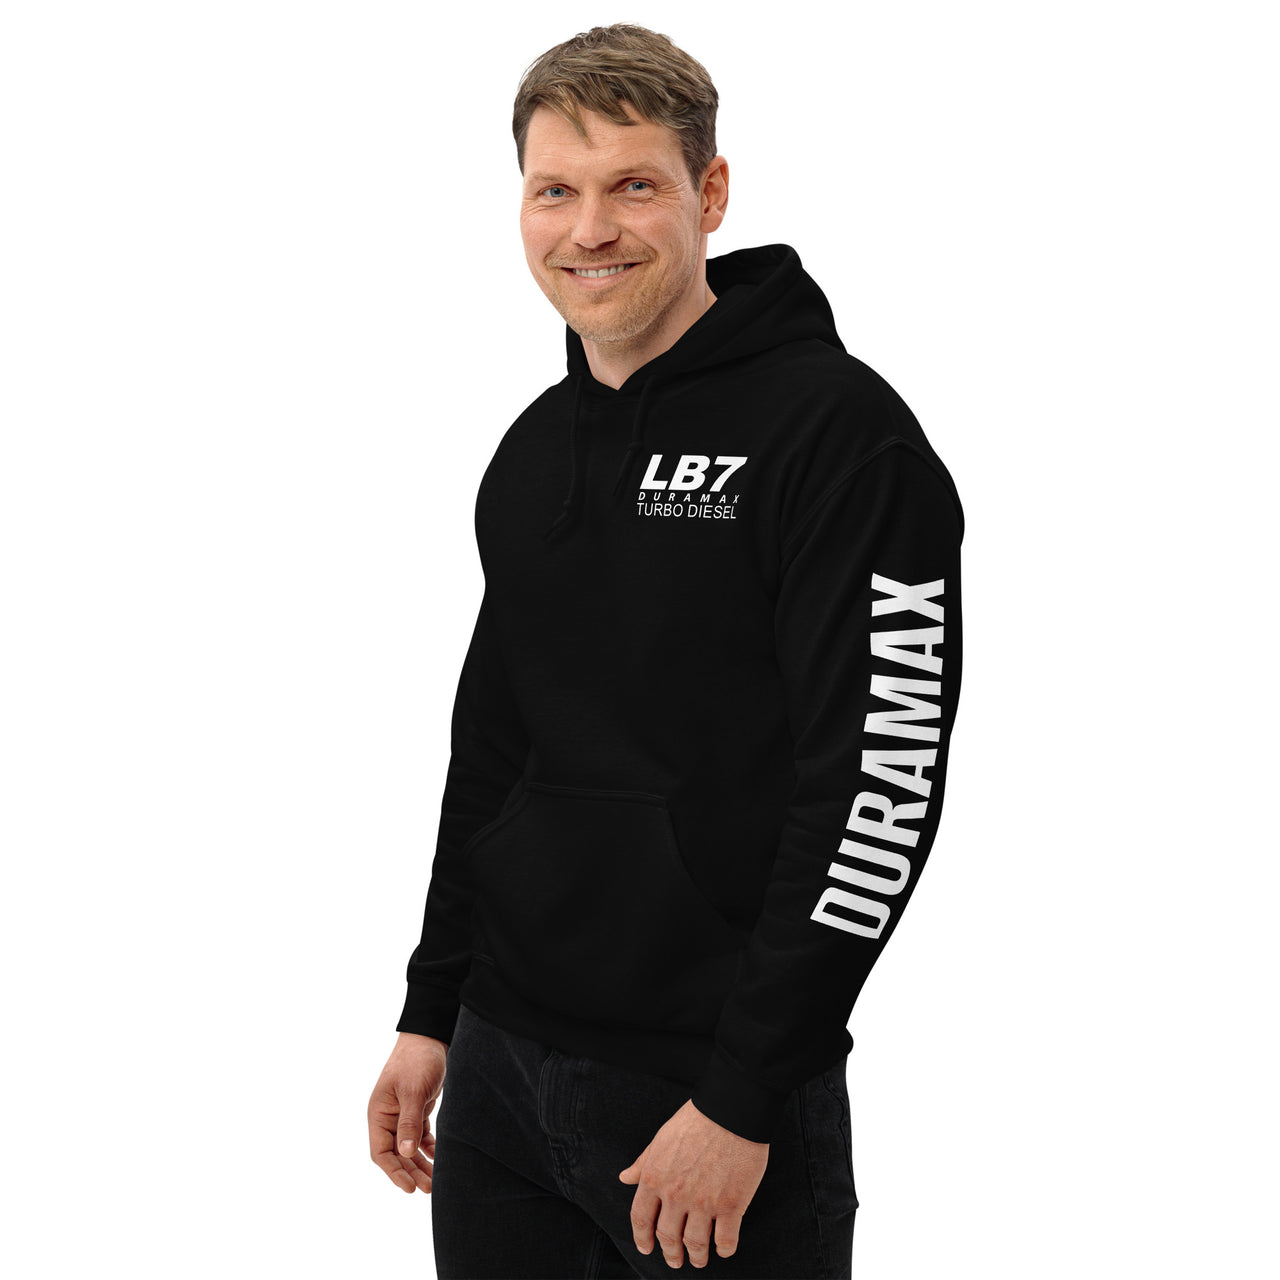 LB7 Duramax Hoodie Pullover Sweatshirt With Sleeve Print - modeled in black